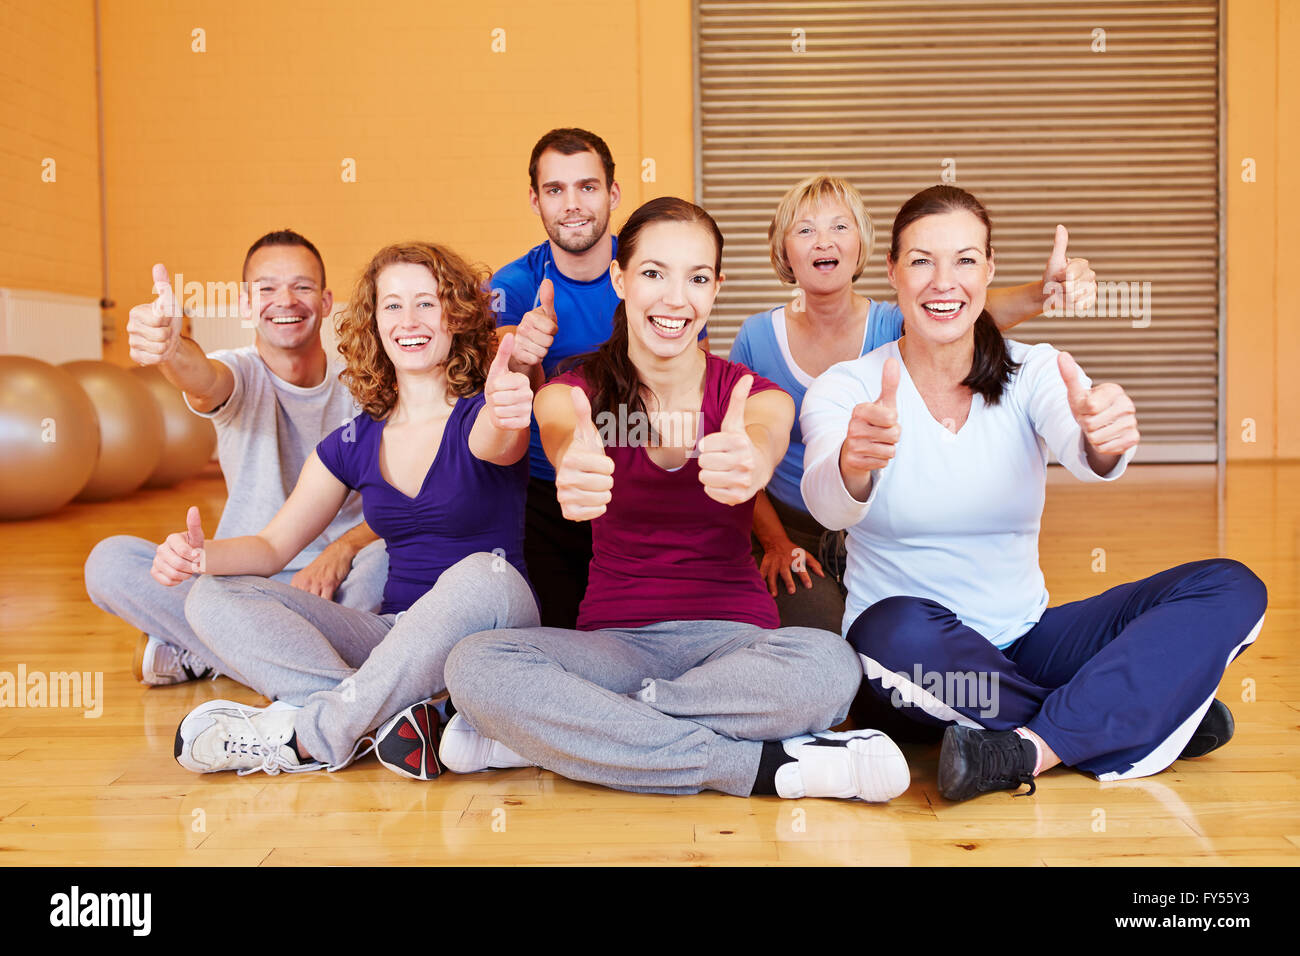 Il tifo sports group holding pollice in alto in un centro fitness Foto Stock